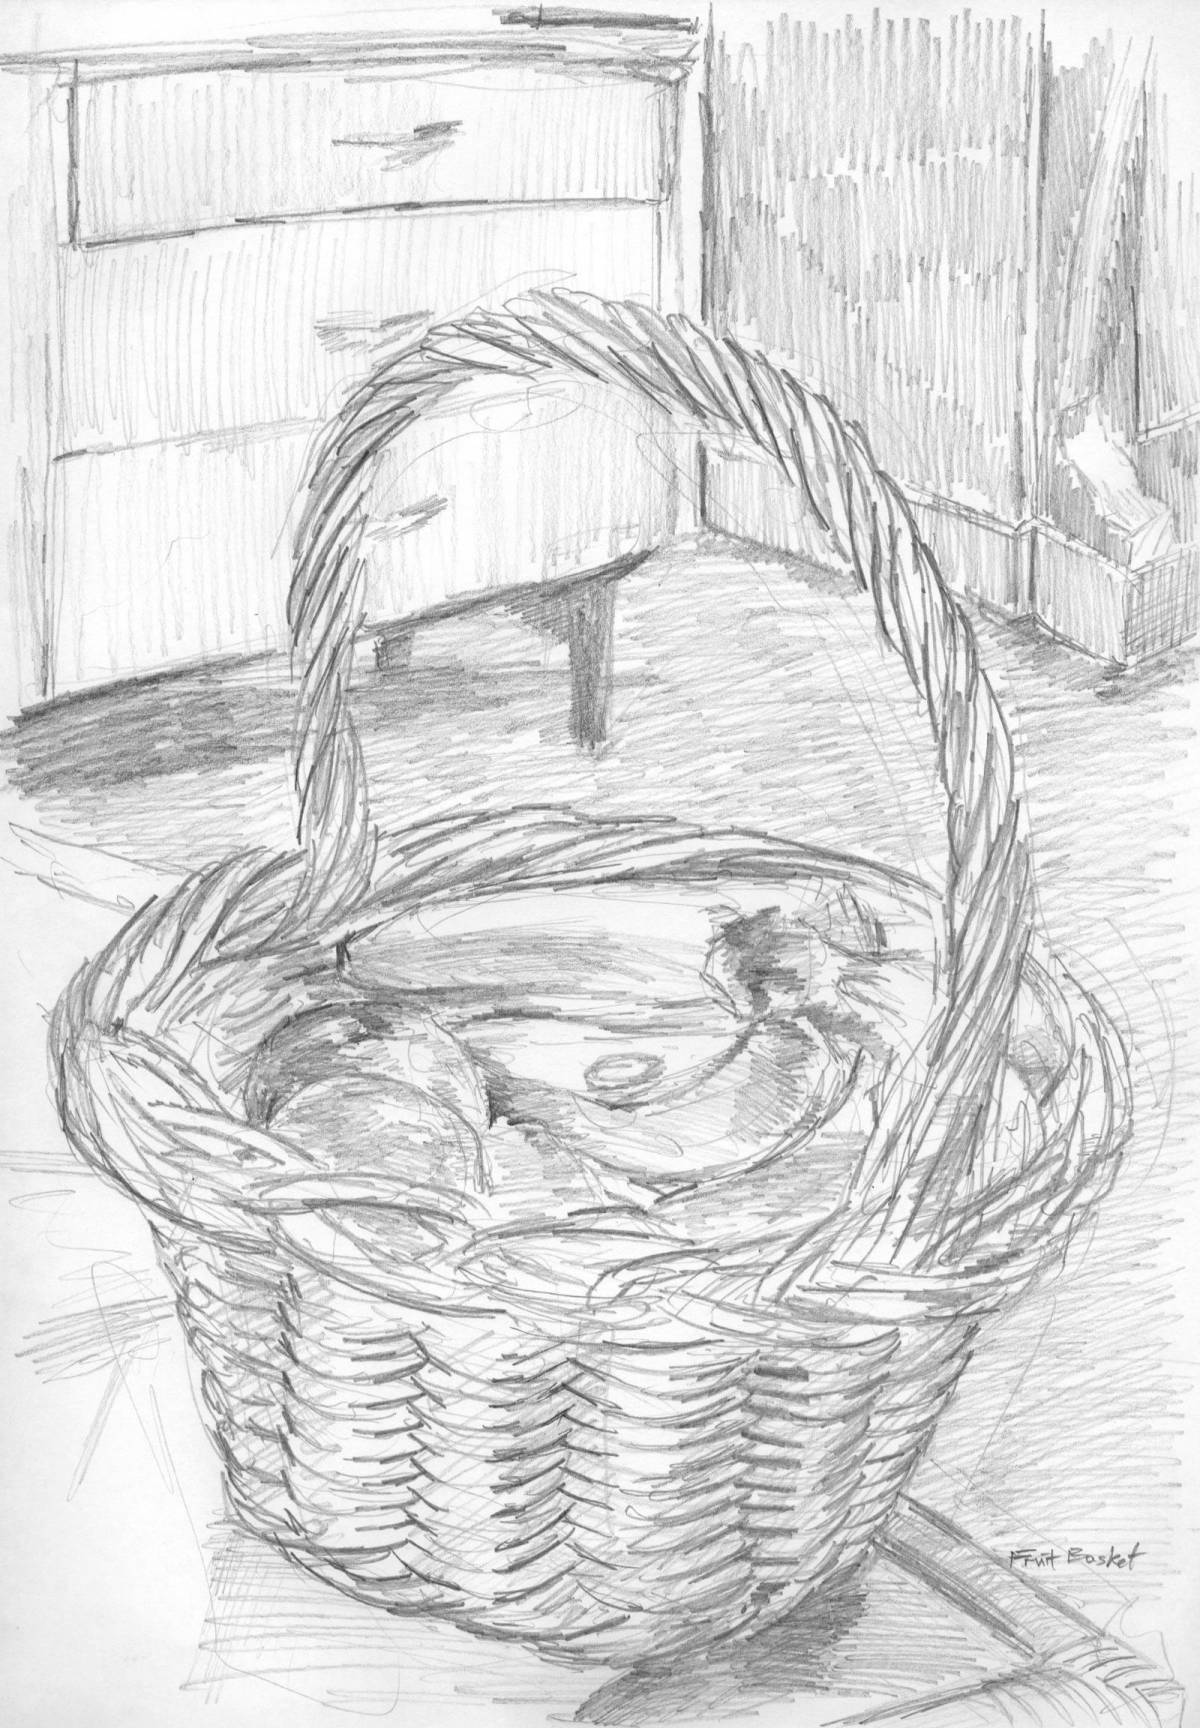 A playful basket of paustovsky spruce cones